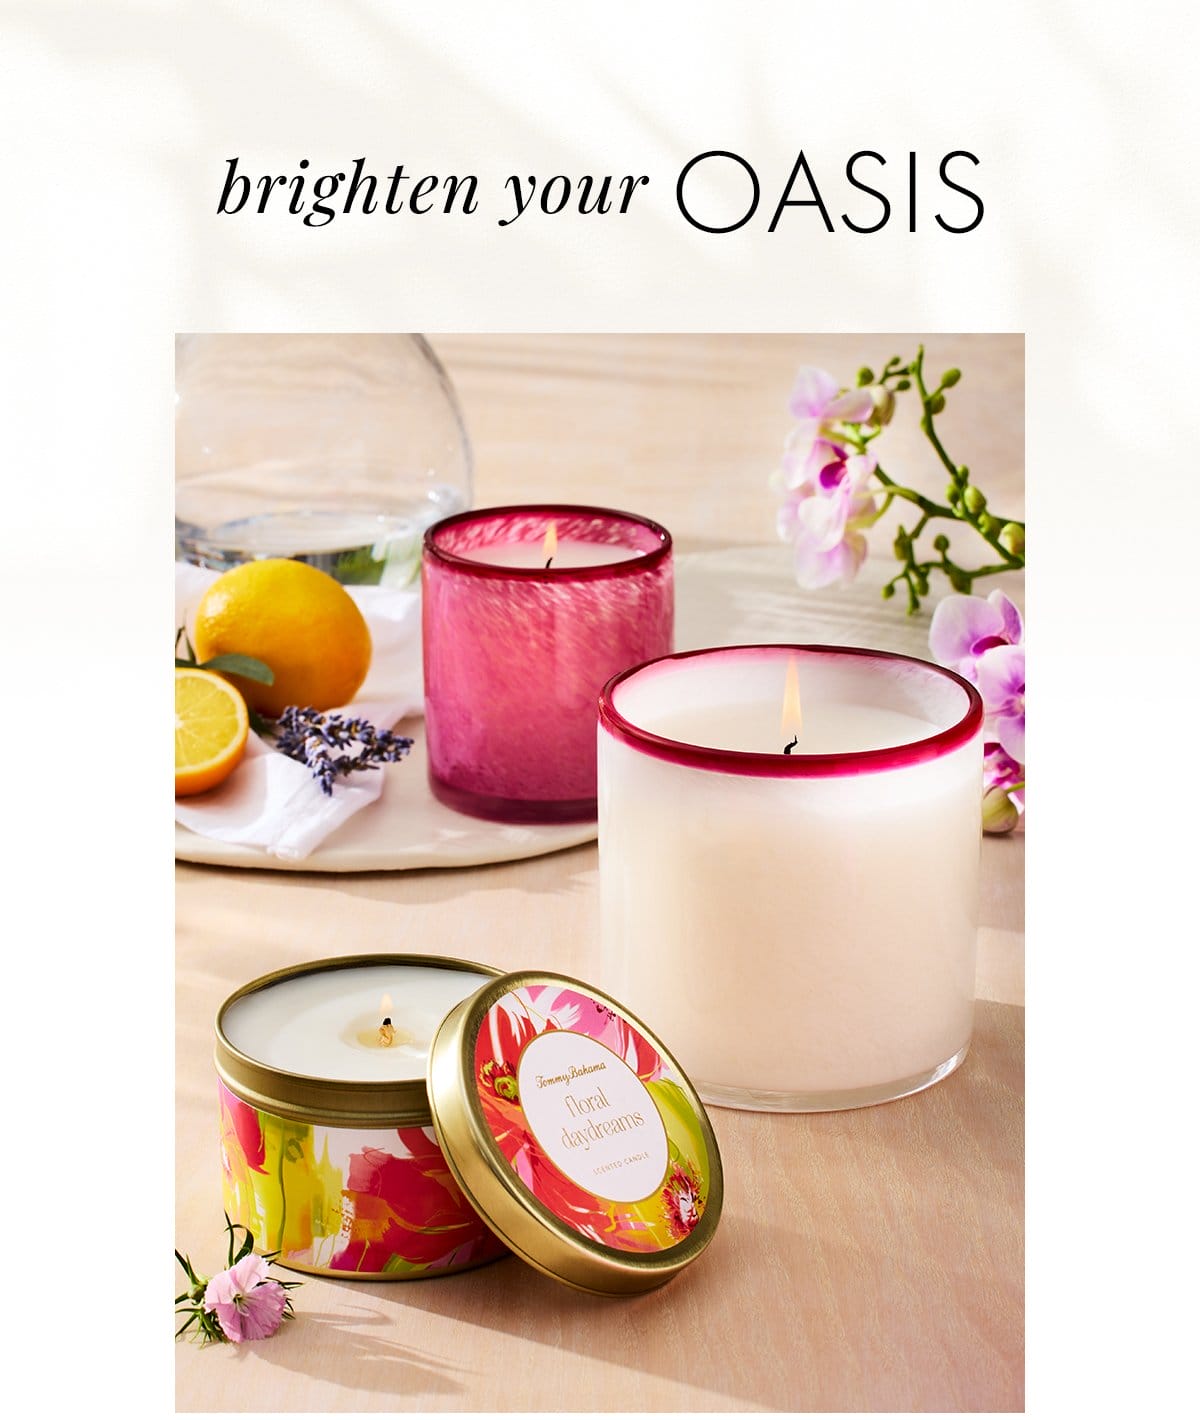 Brighten your oasis.